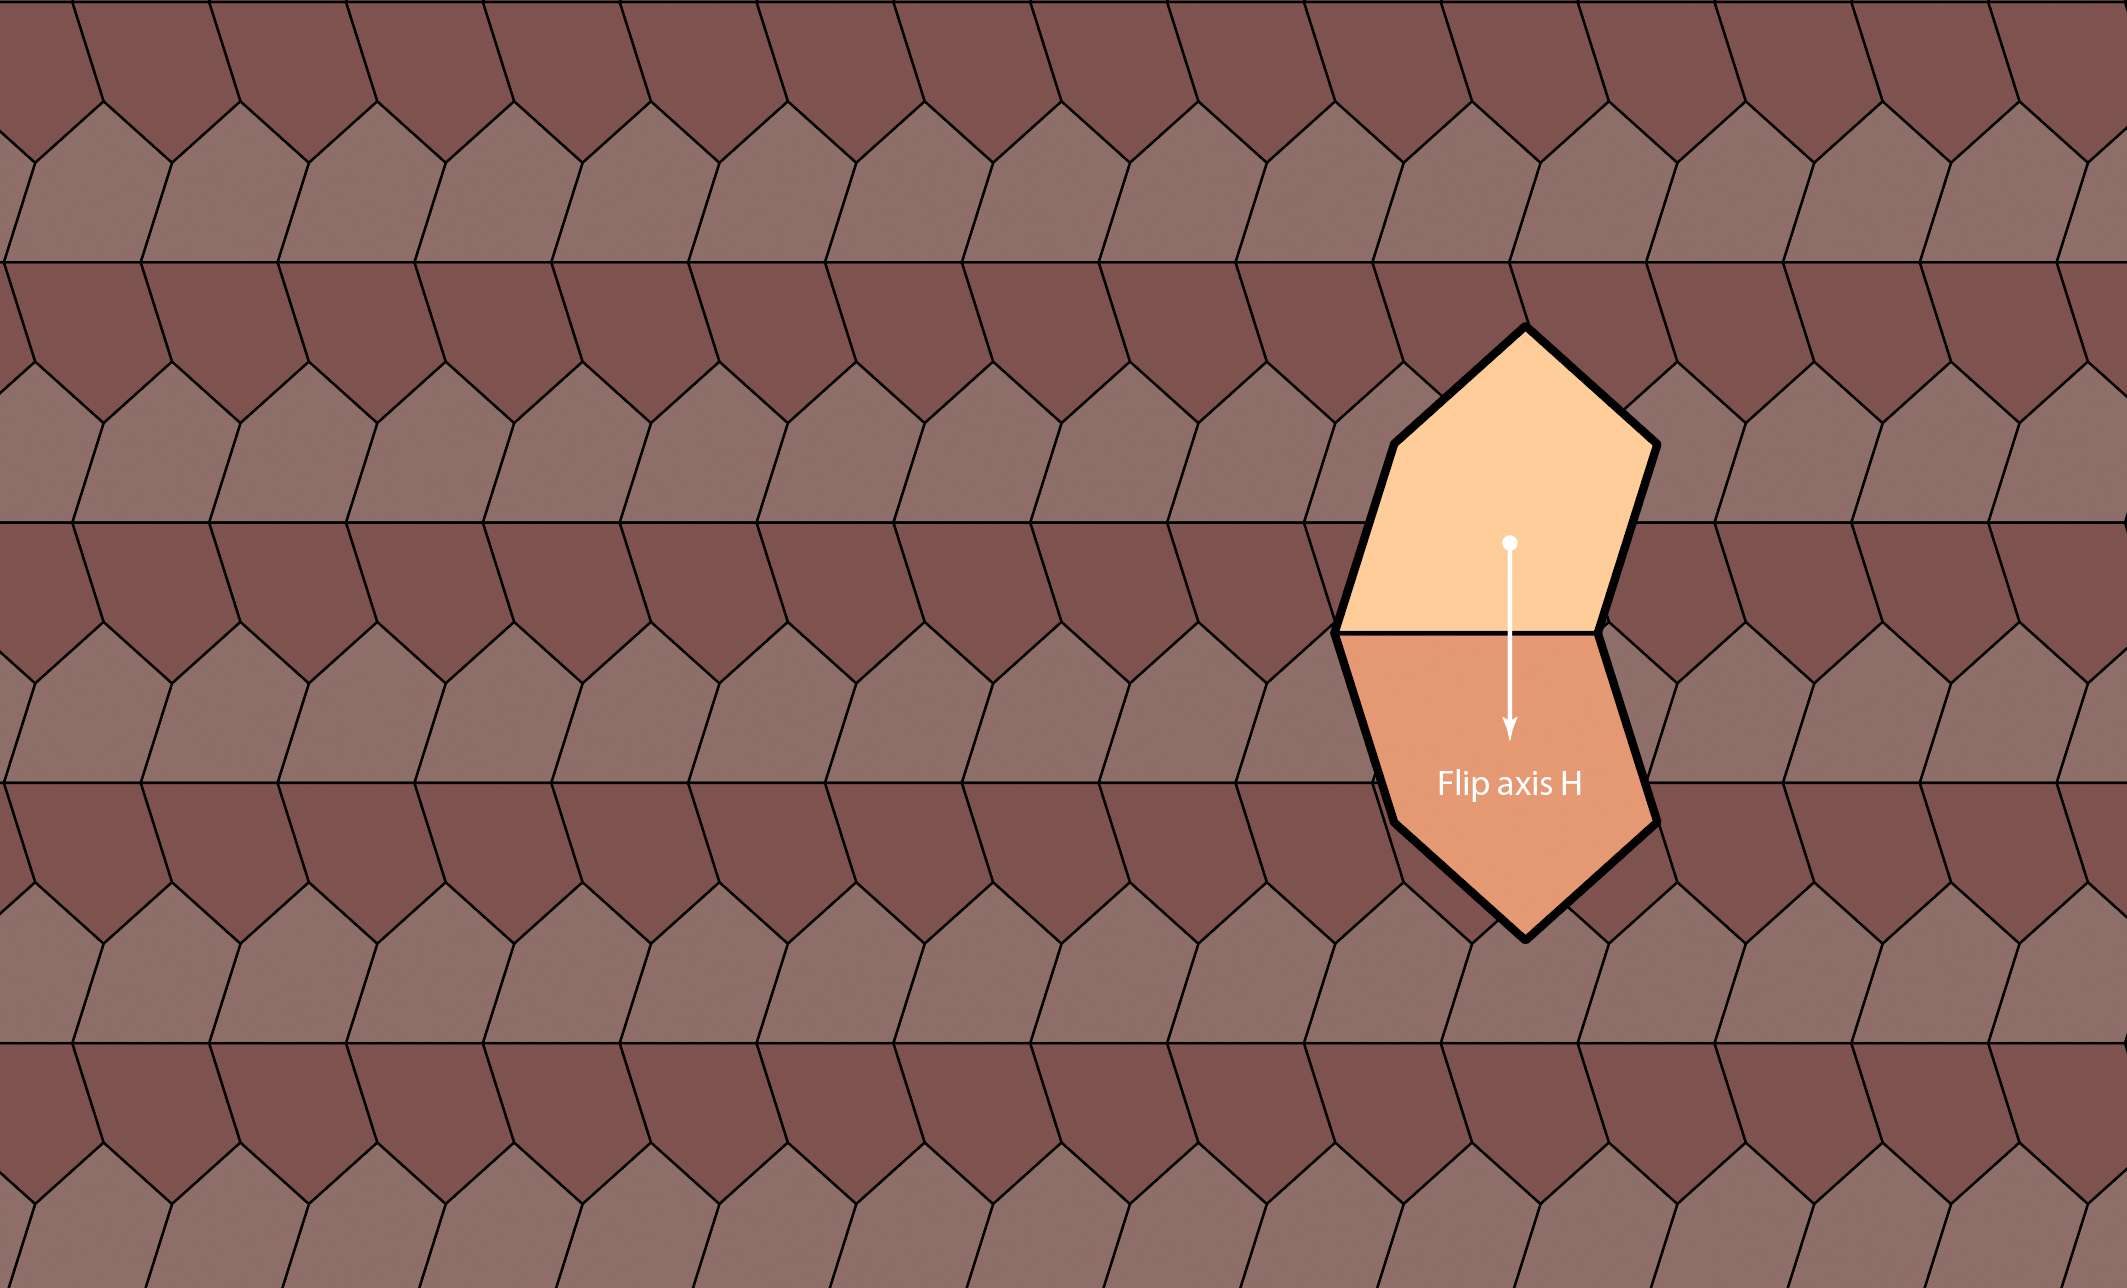 Reinhardt-pentagon-Type 1 variation